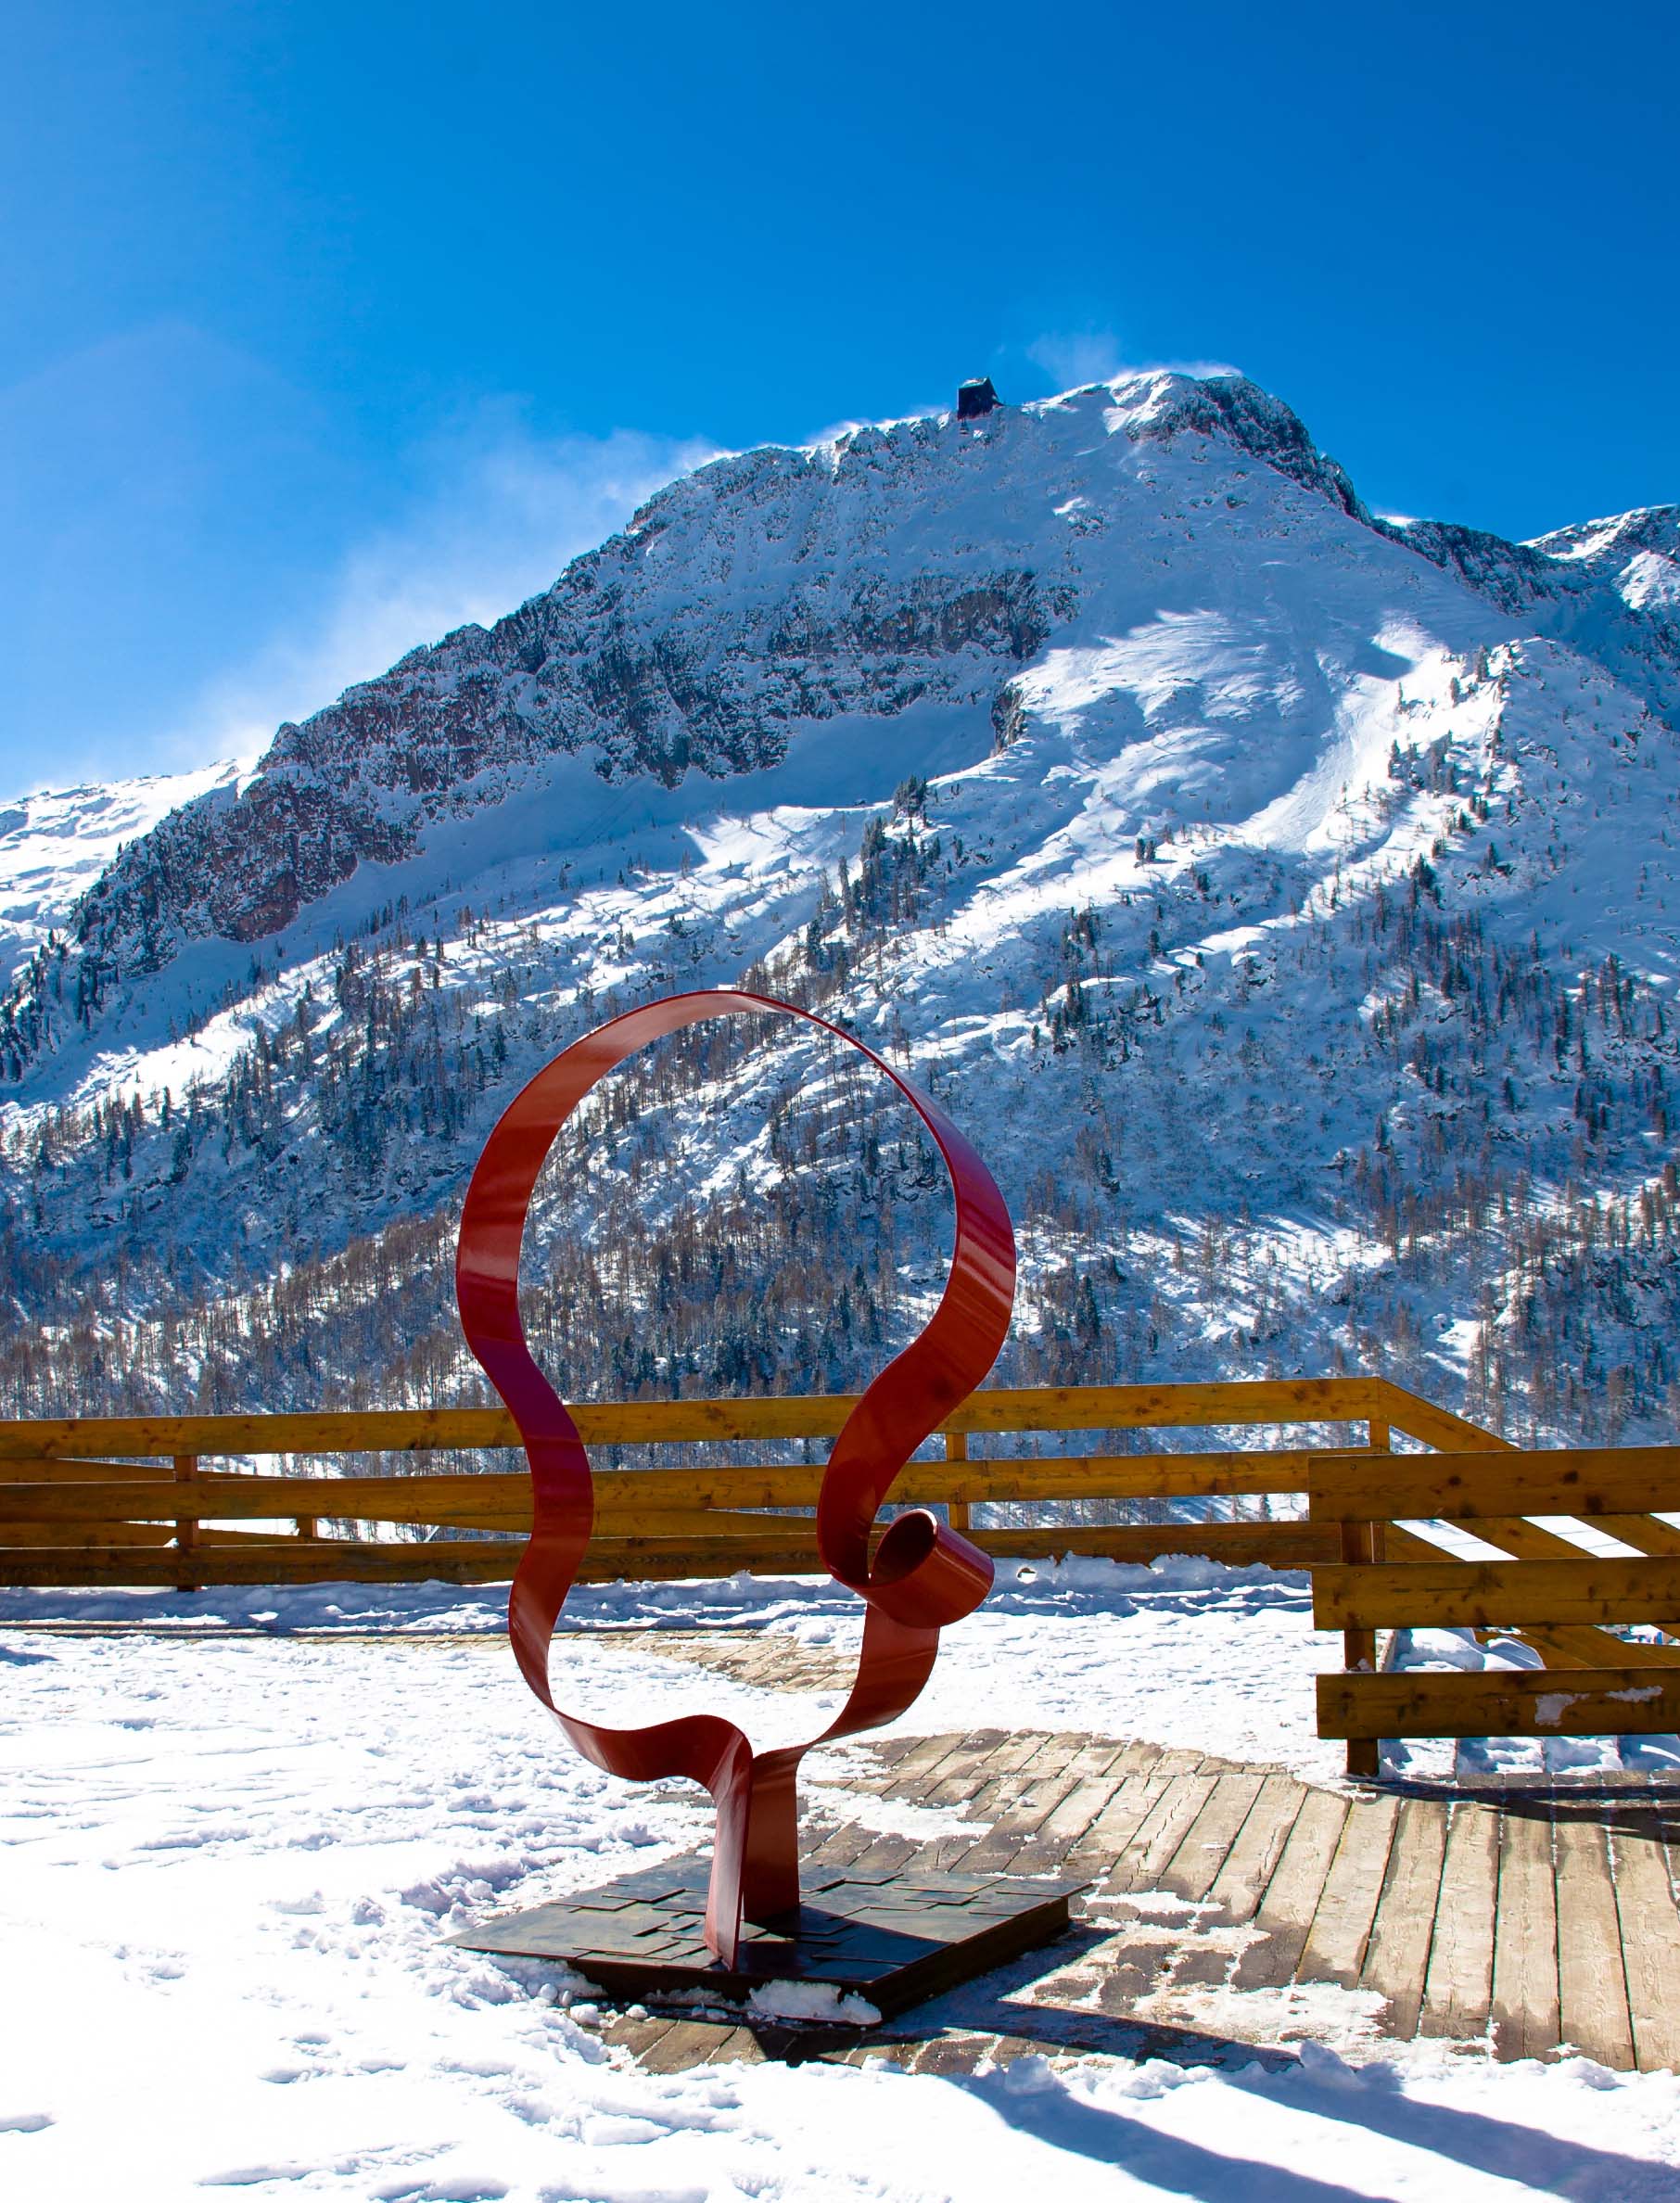 Prima Biennale dâ€™Arte nella Ski Area San Pellegrino